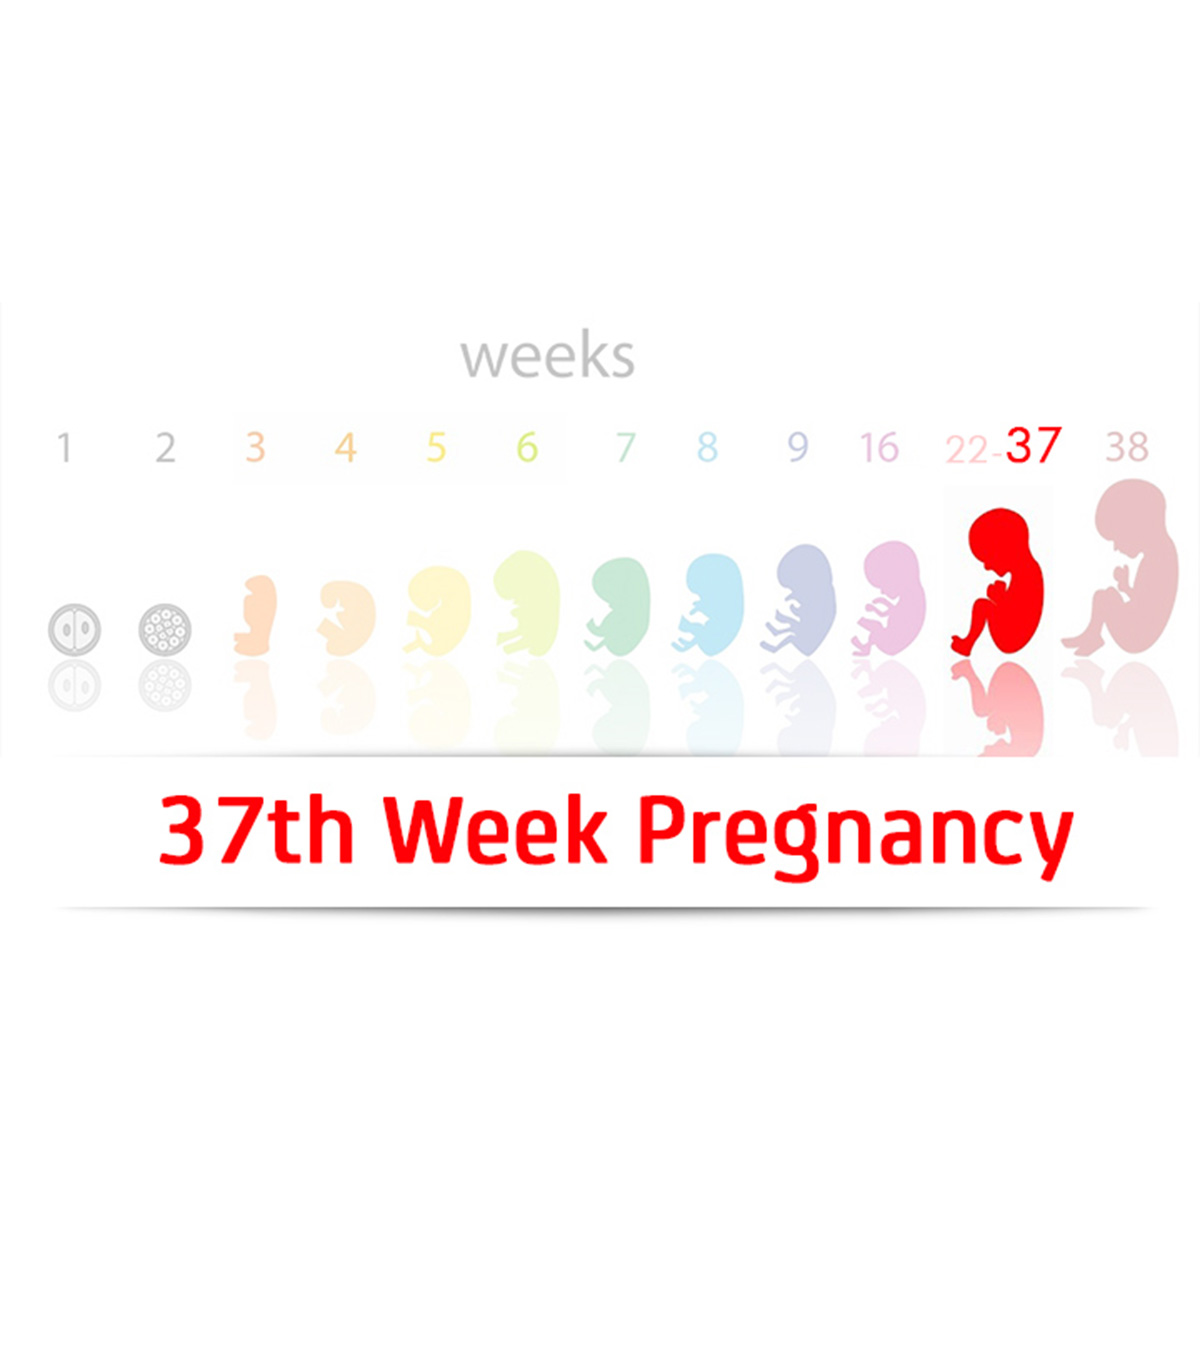 怀孕37周:症状、提示和婴儿发育